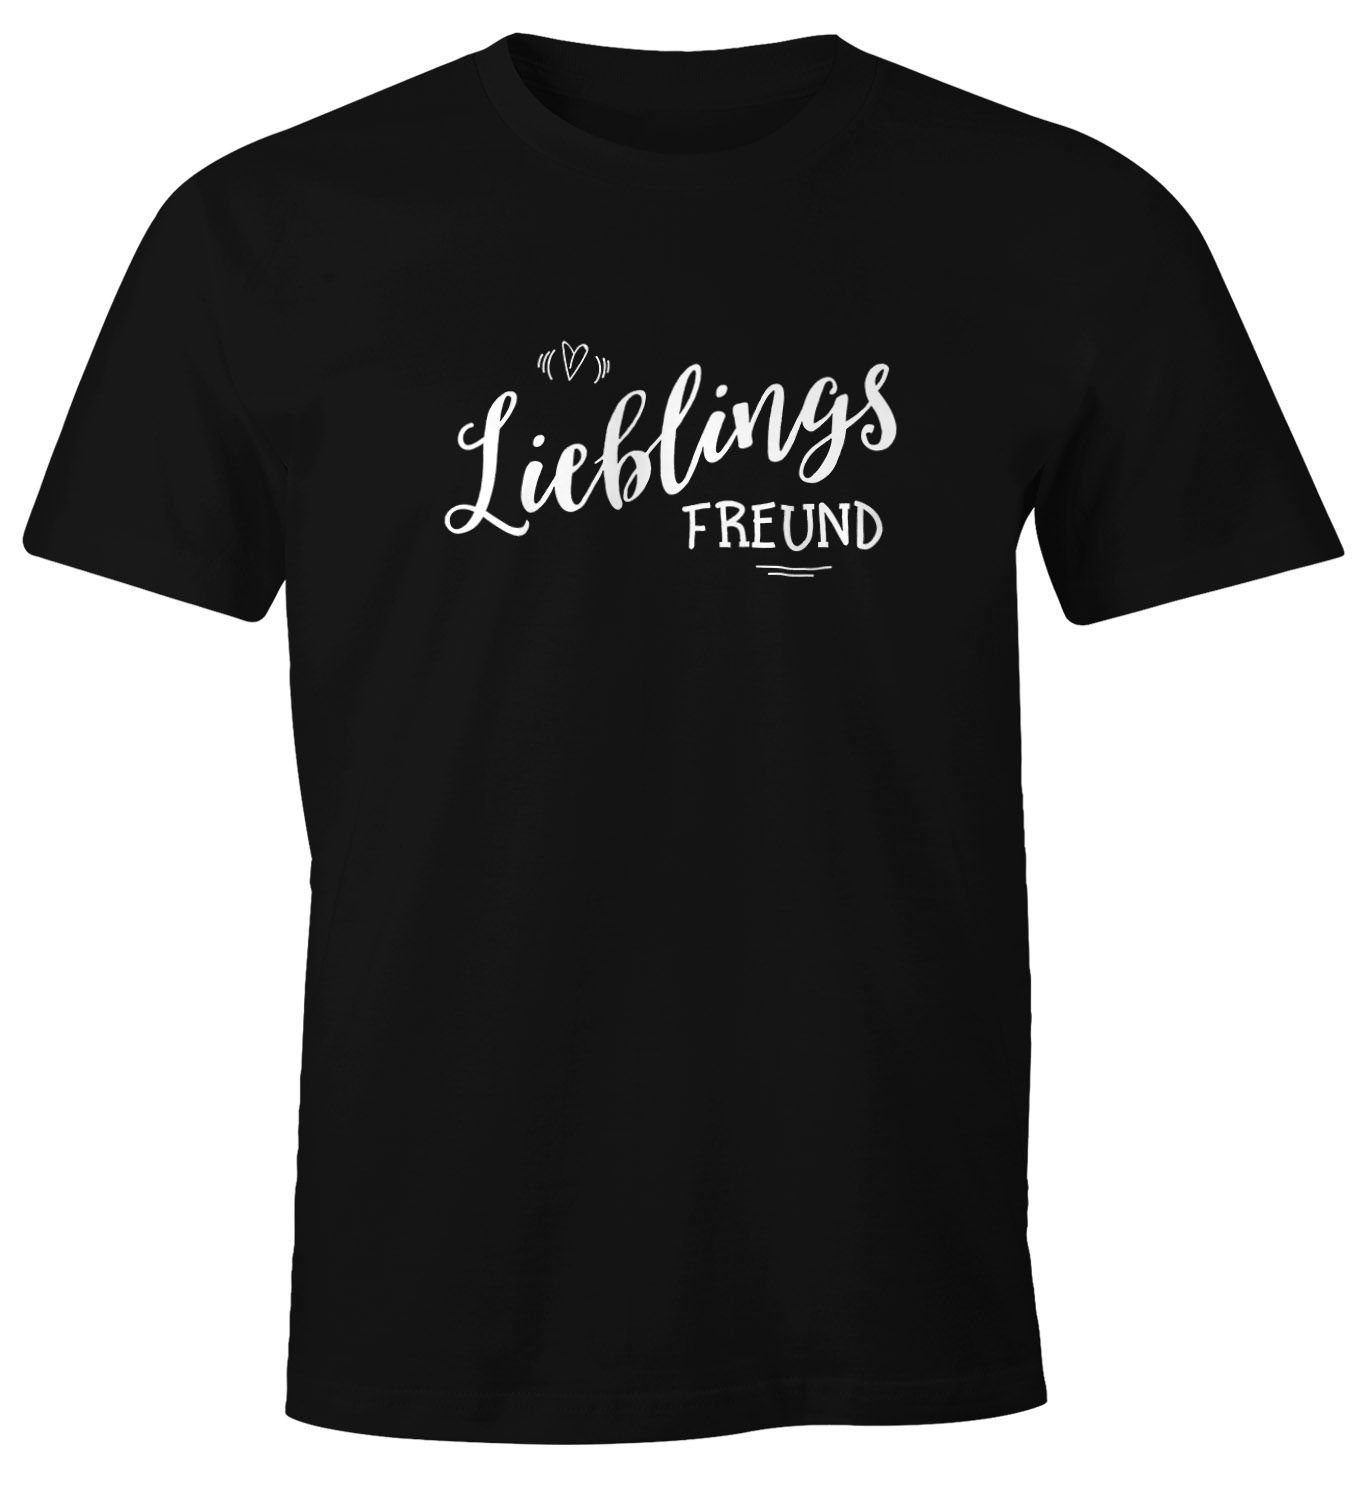 MoonWorks Print-Shirt Herren T-Shirt Lieblingsfreund Geschenk Freundschaft Partner Freund Liebe Moonworks® mit Print schwarz